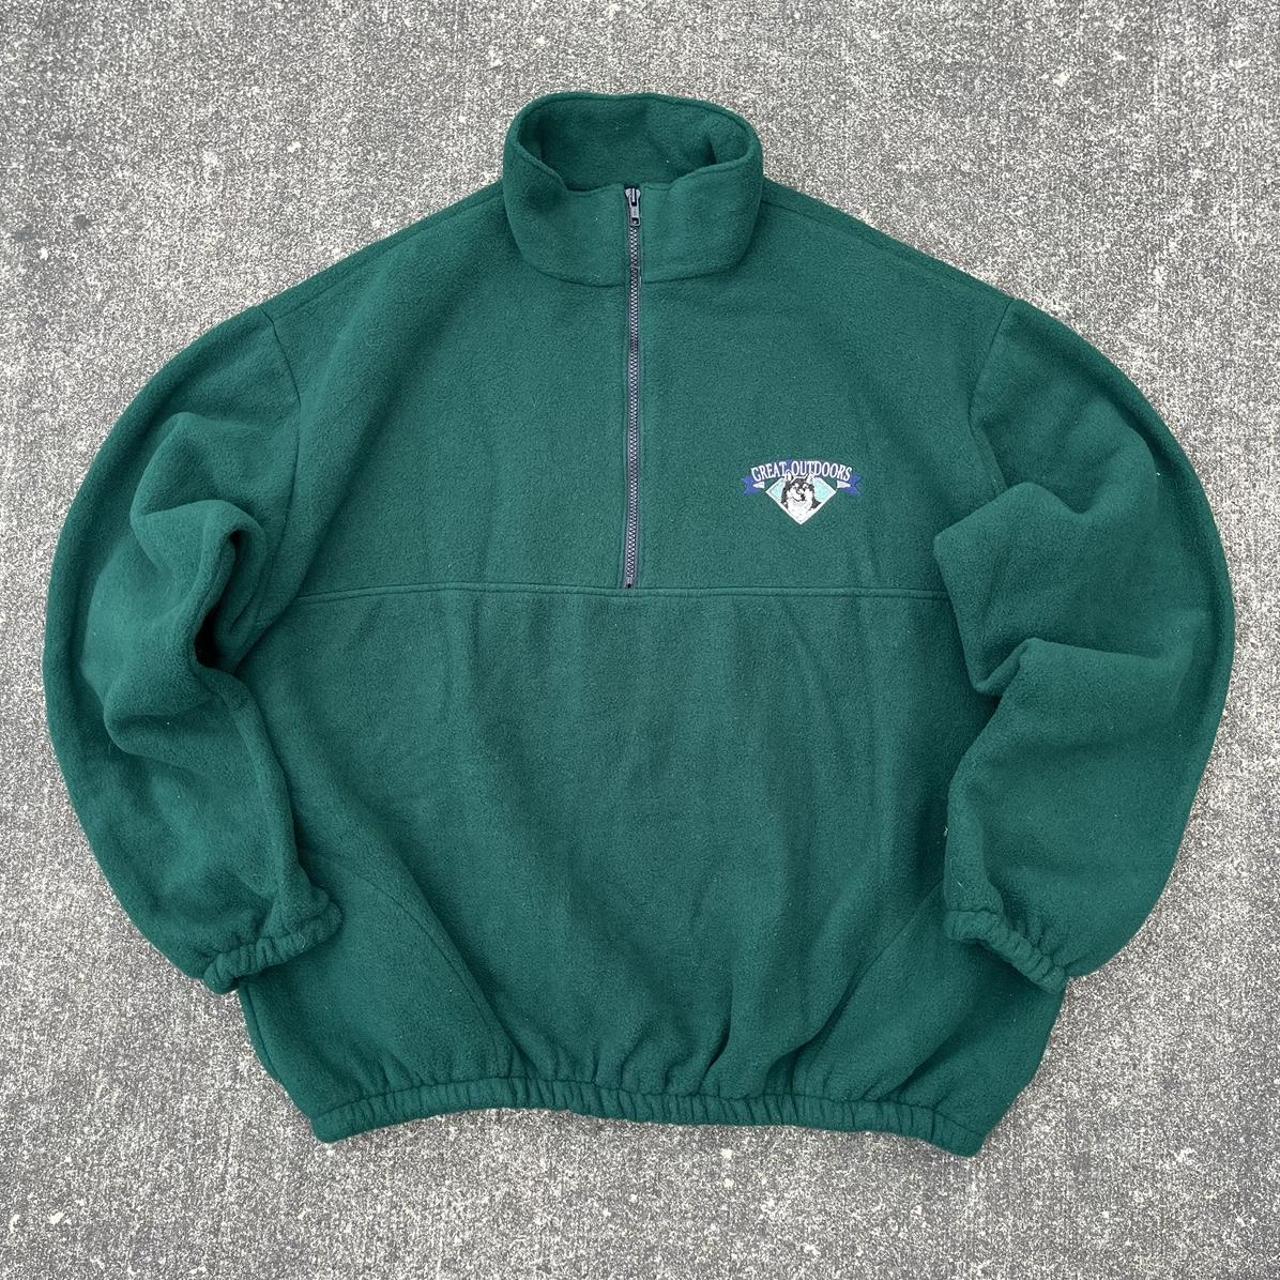 Vintage 90’s Forest Green Half Zip Fleece Jacket... - Depop